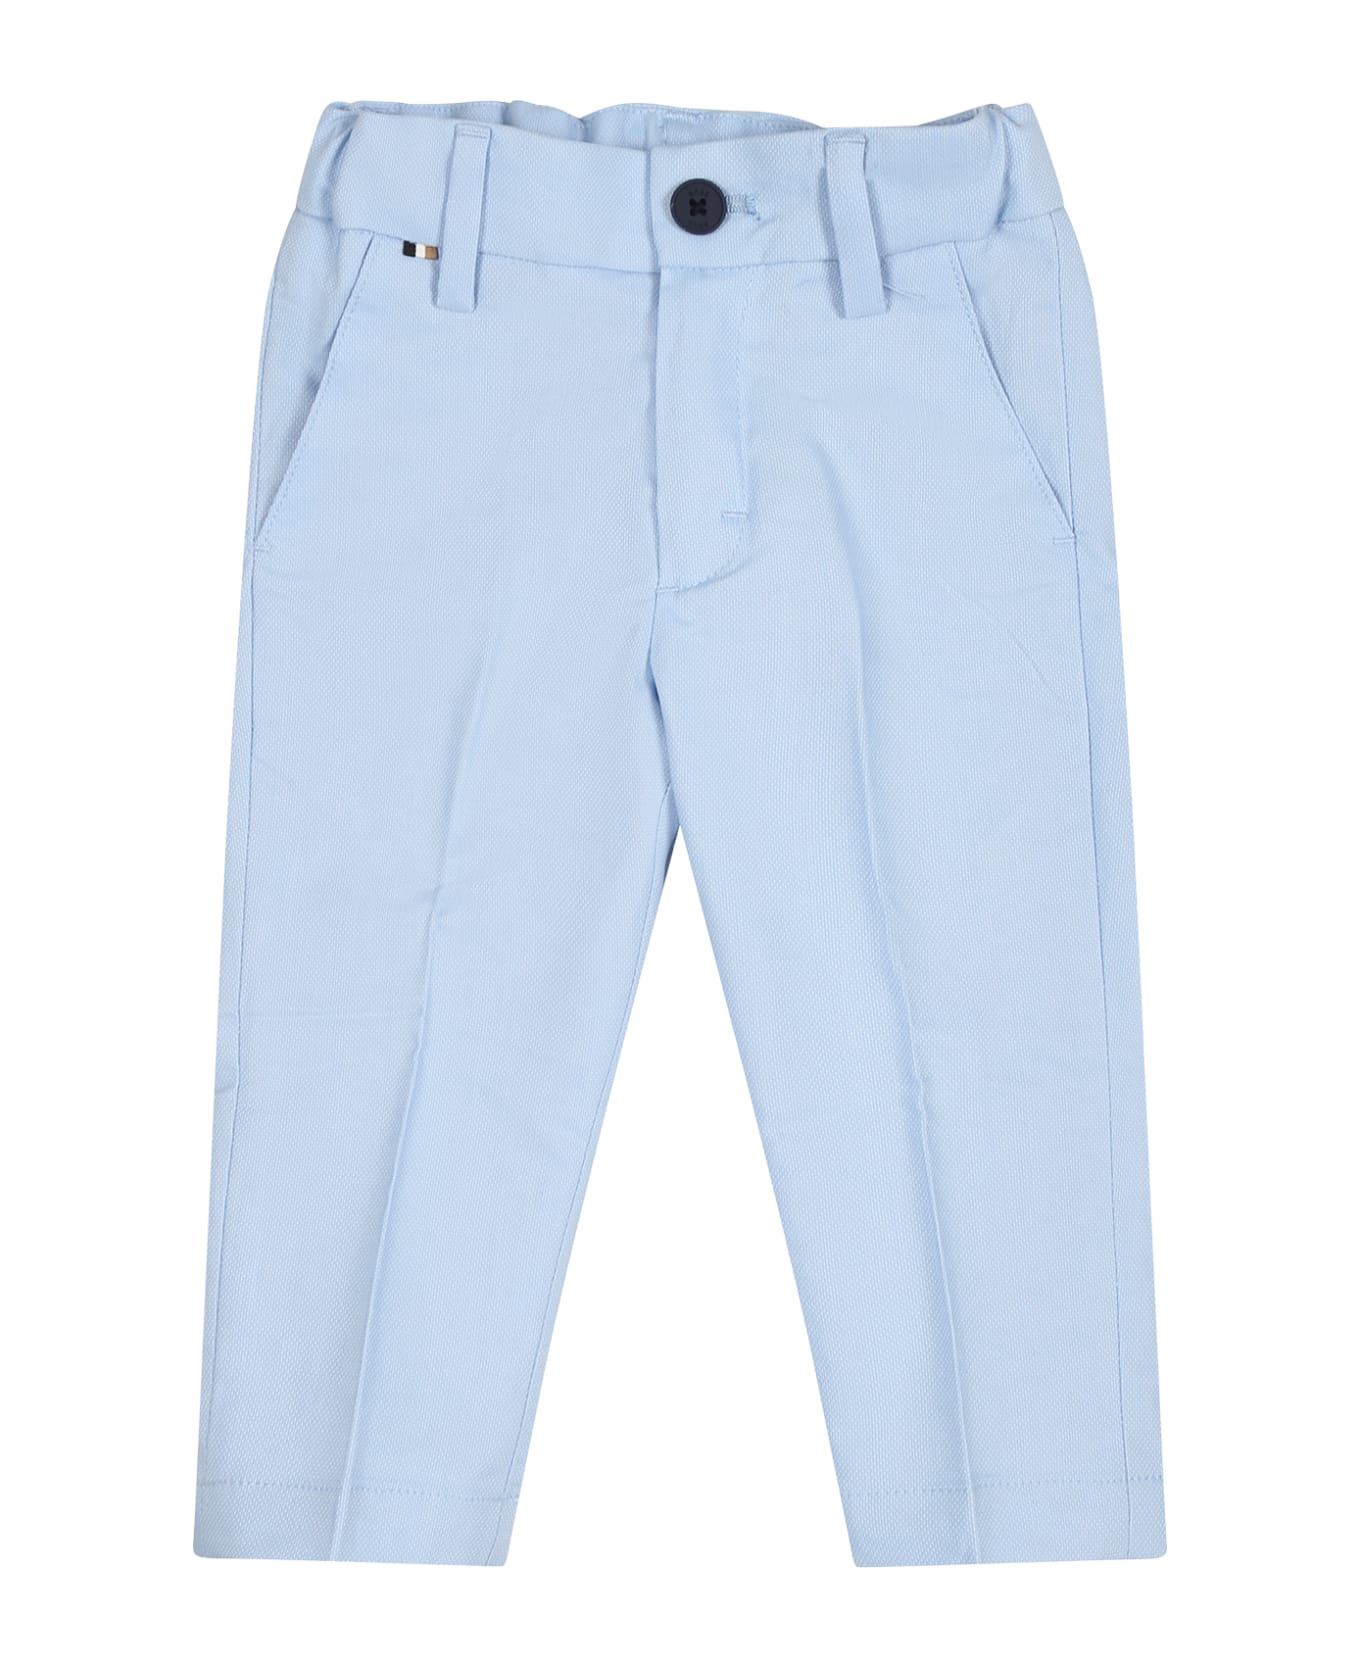 Hugo Boss Elegant Sky Blue Trousers For Baby Boy - Light Blue ボトムス